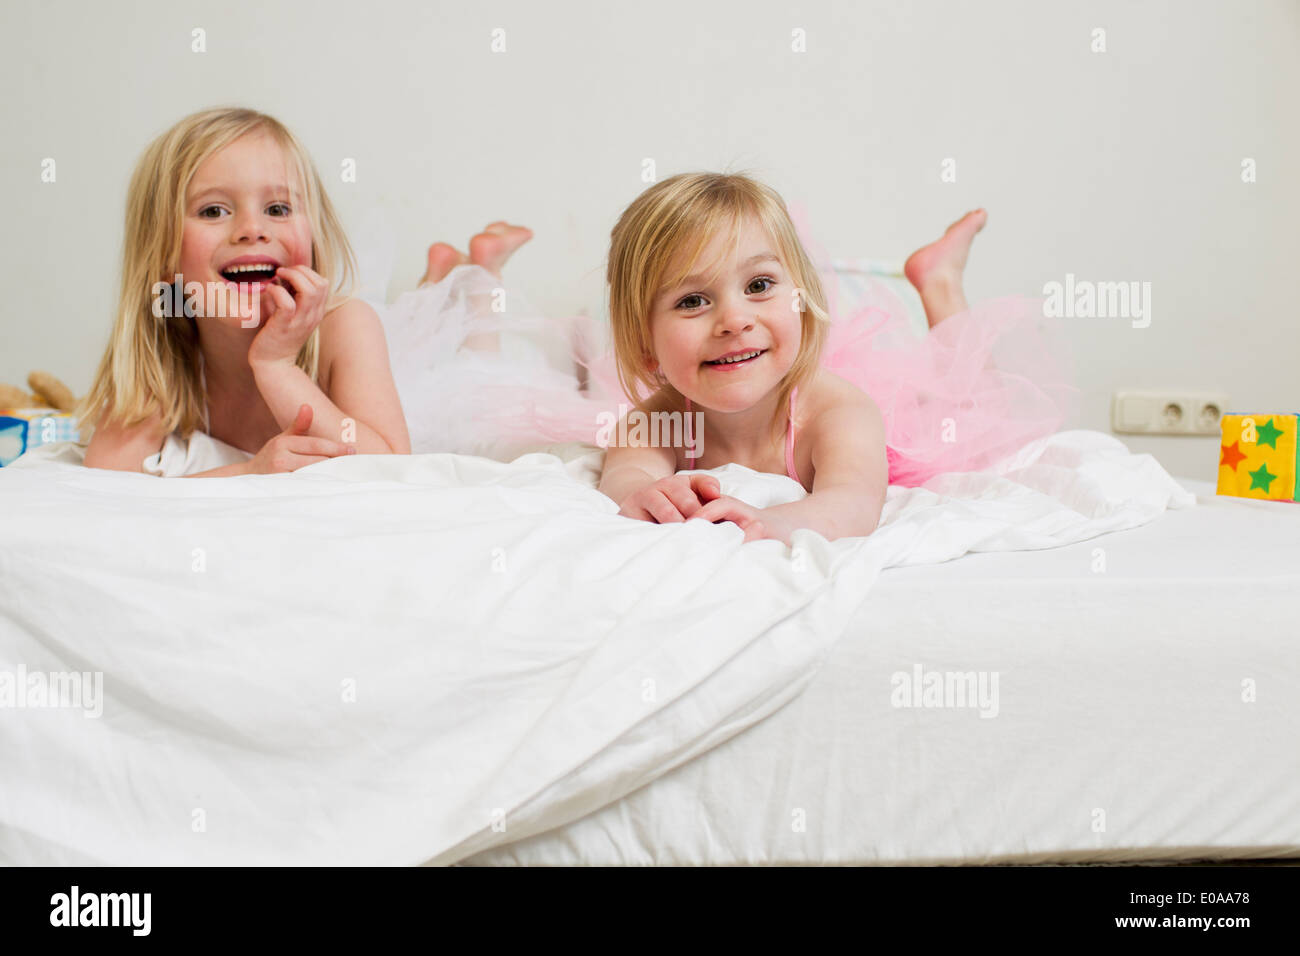 Retrato de dos jóvenes hermanas tumbado en la cama Foto de stock